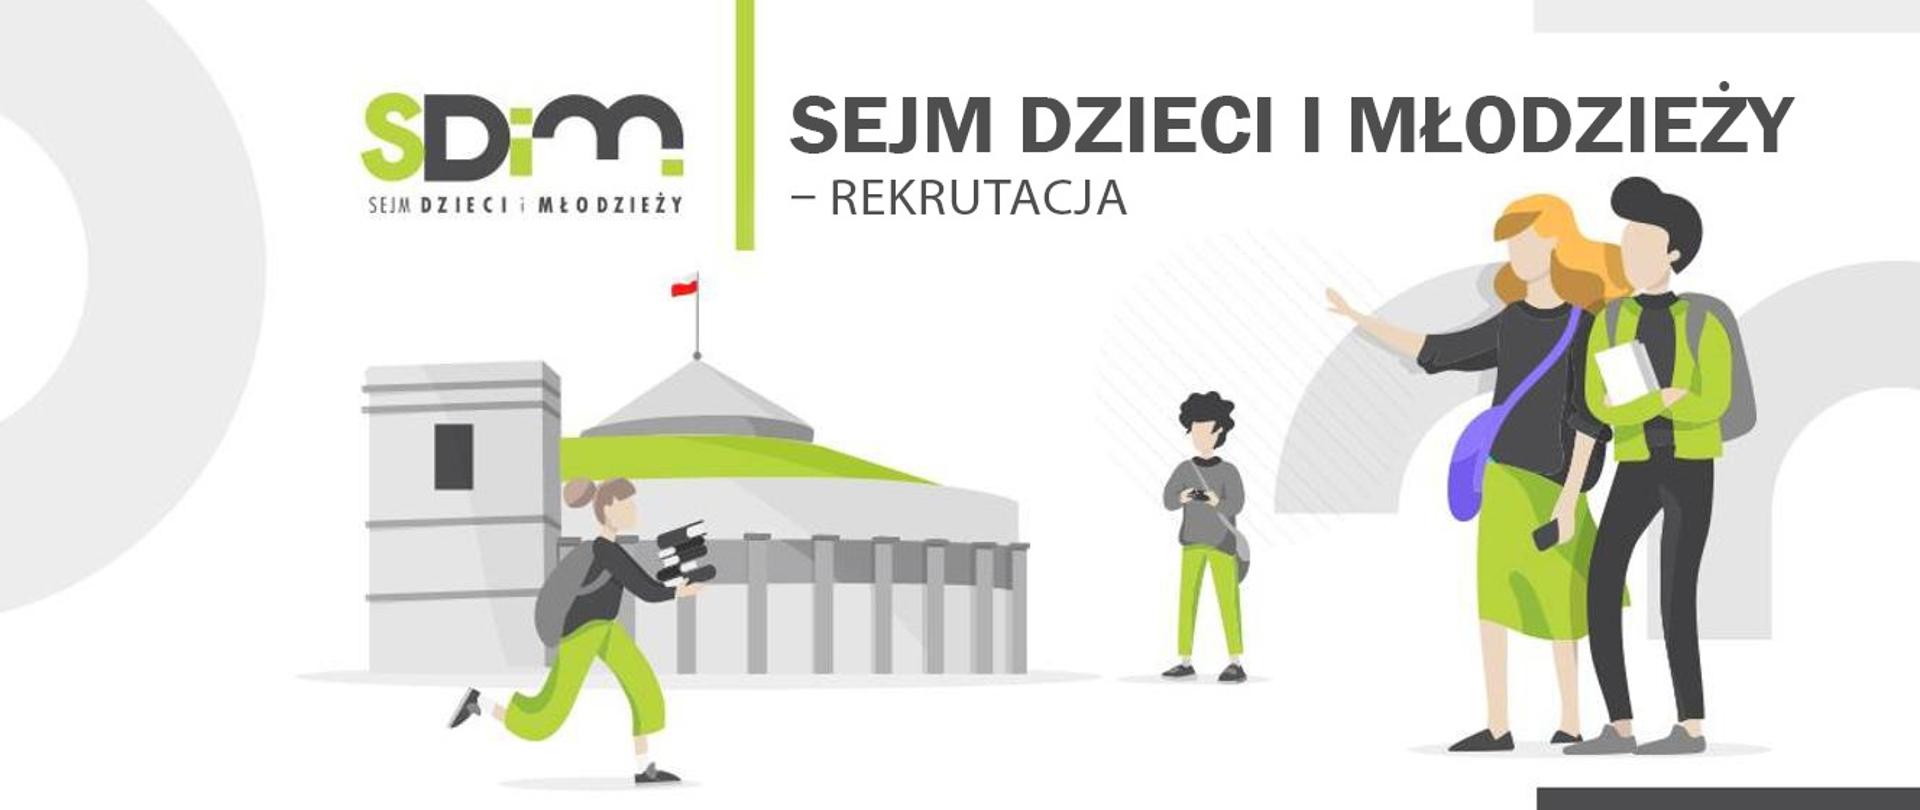 Sejm Dzieci i Młodzieży – rekrutacja od 1 marca